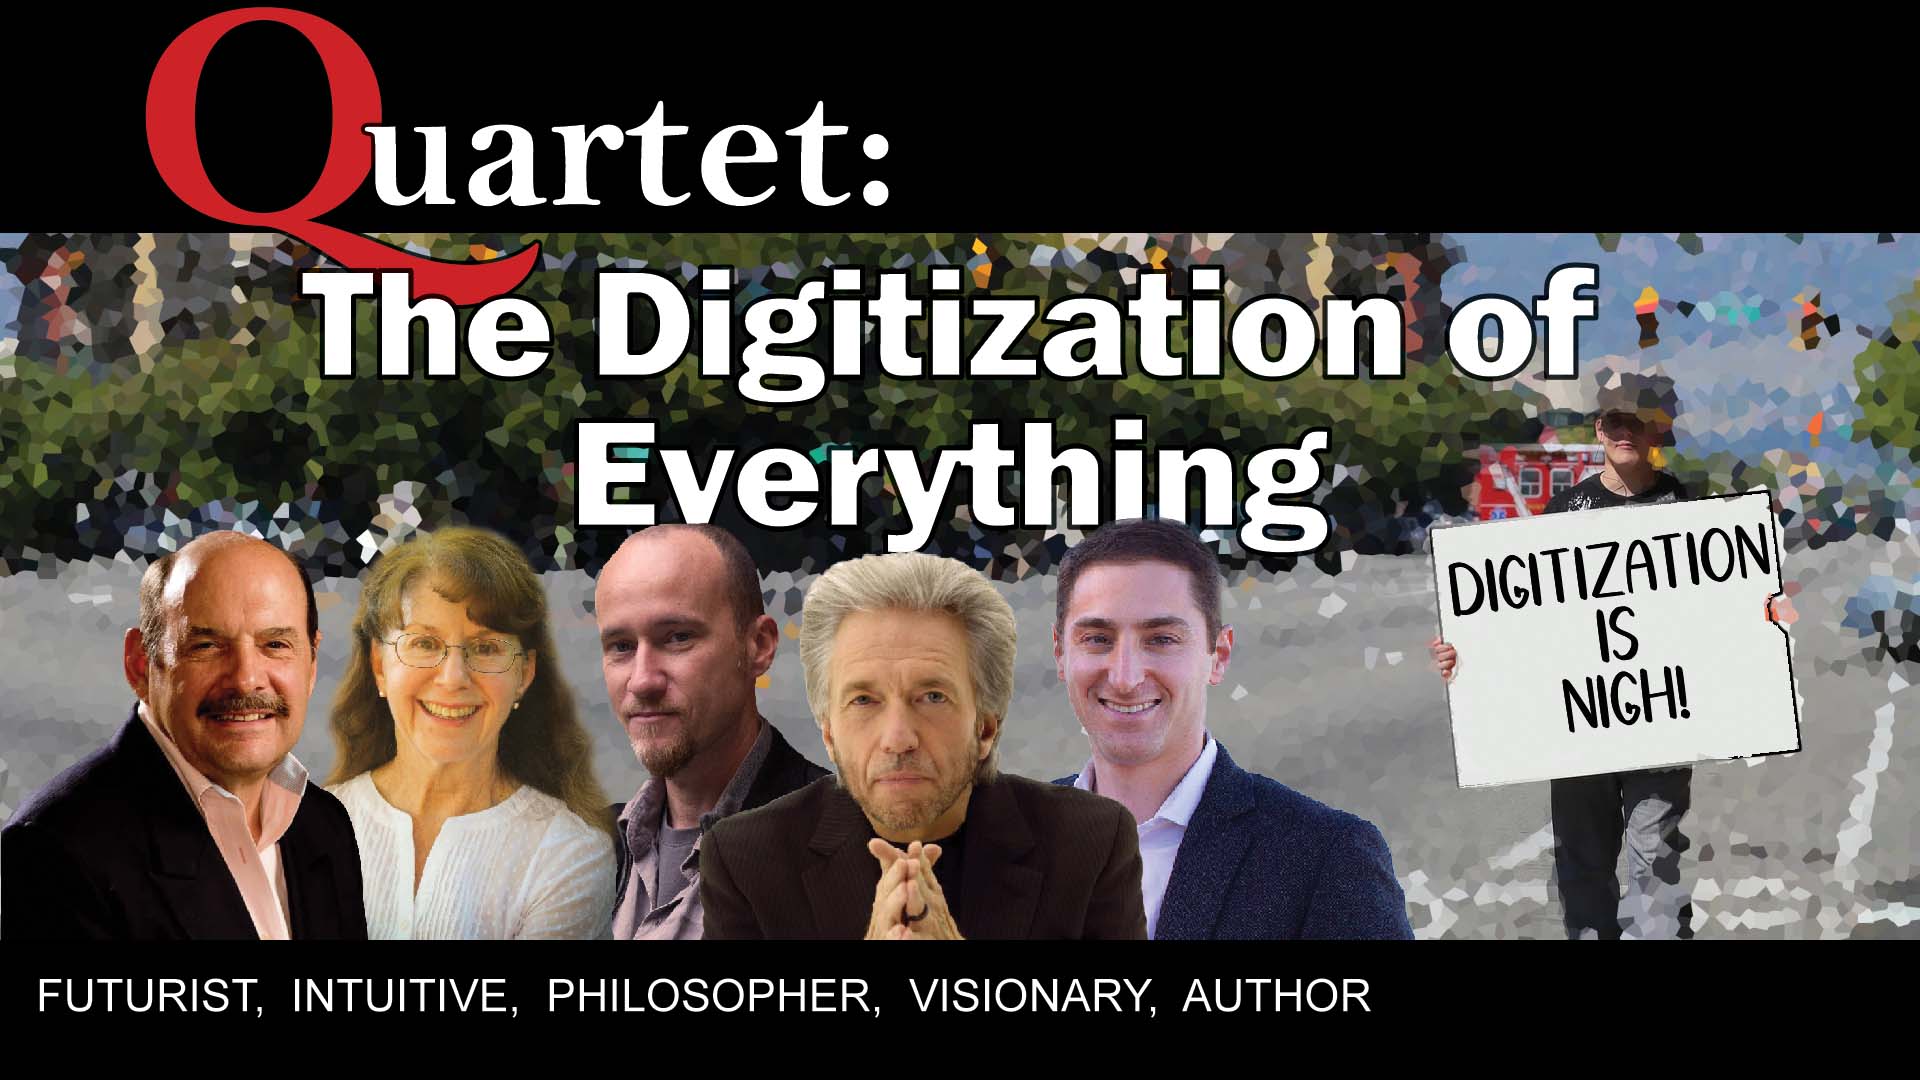 Quartet, The digitization of everything